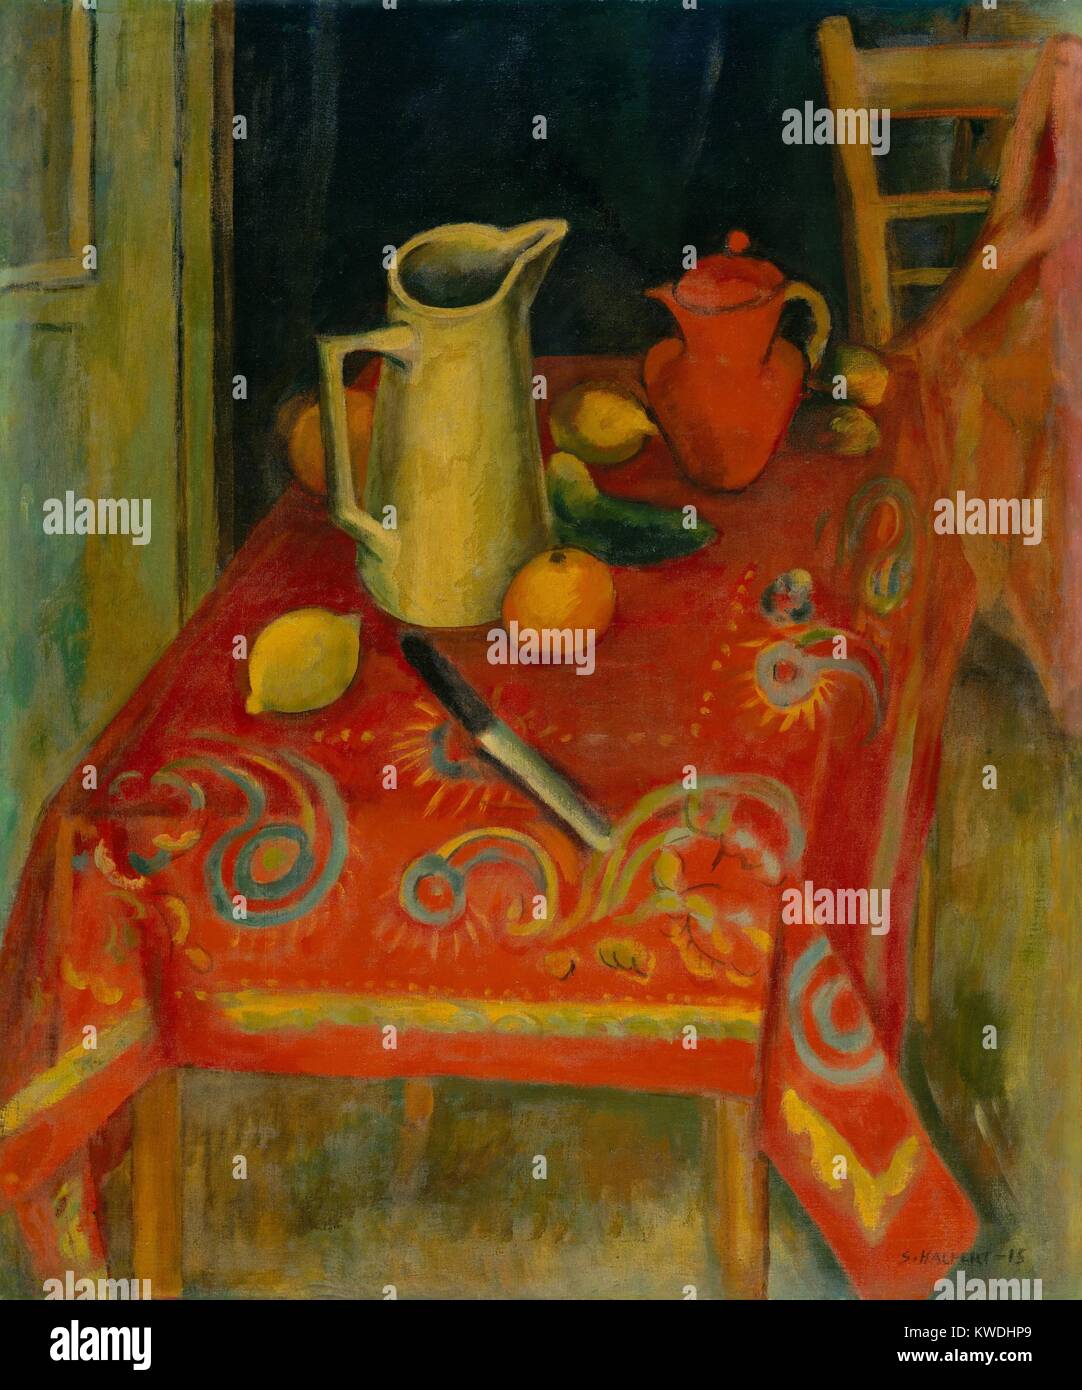 La nappe rouge, par Samuel Halpert, 1915, American peinture, huile sur toile. L'artiste a étudié et vécu à Paris et l'influence combinée de Cézanne et les fauves dans cette peinture de la vie encore BSLOC  2017 (7 115) Banque D'Images